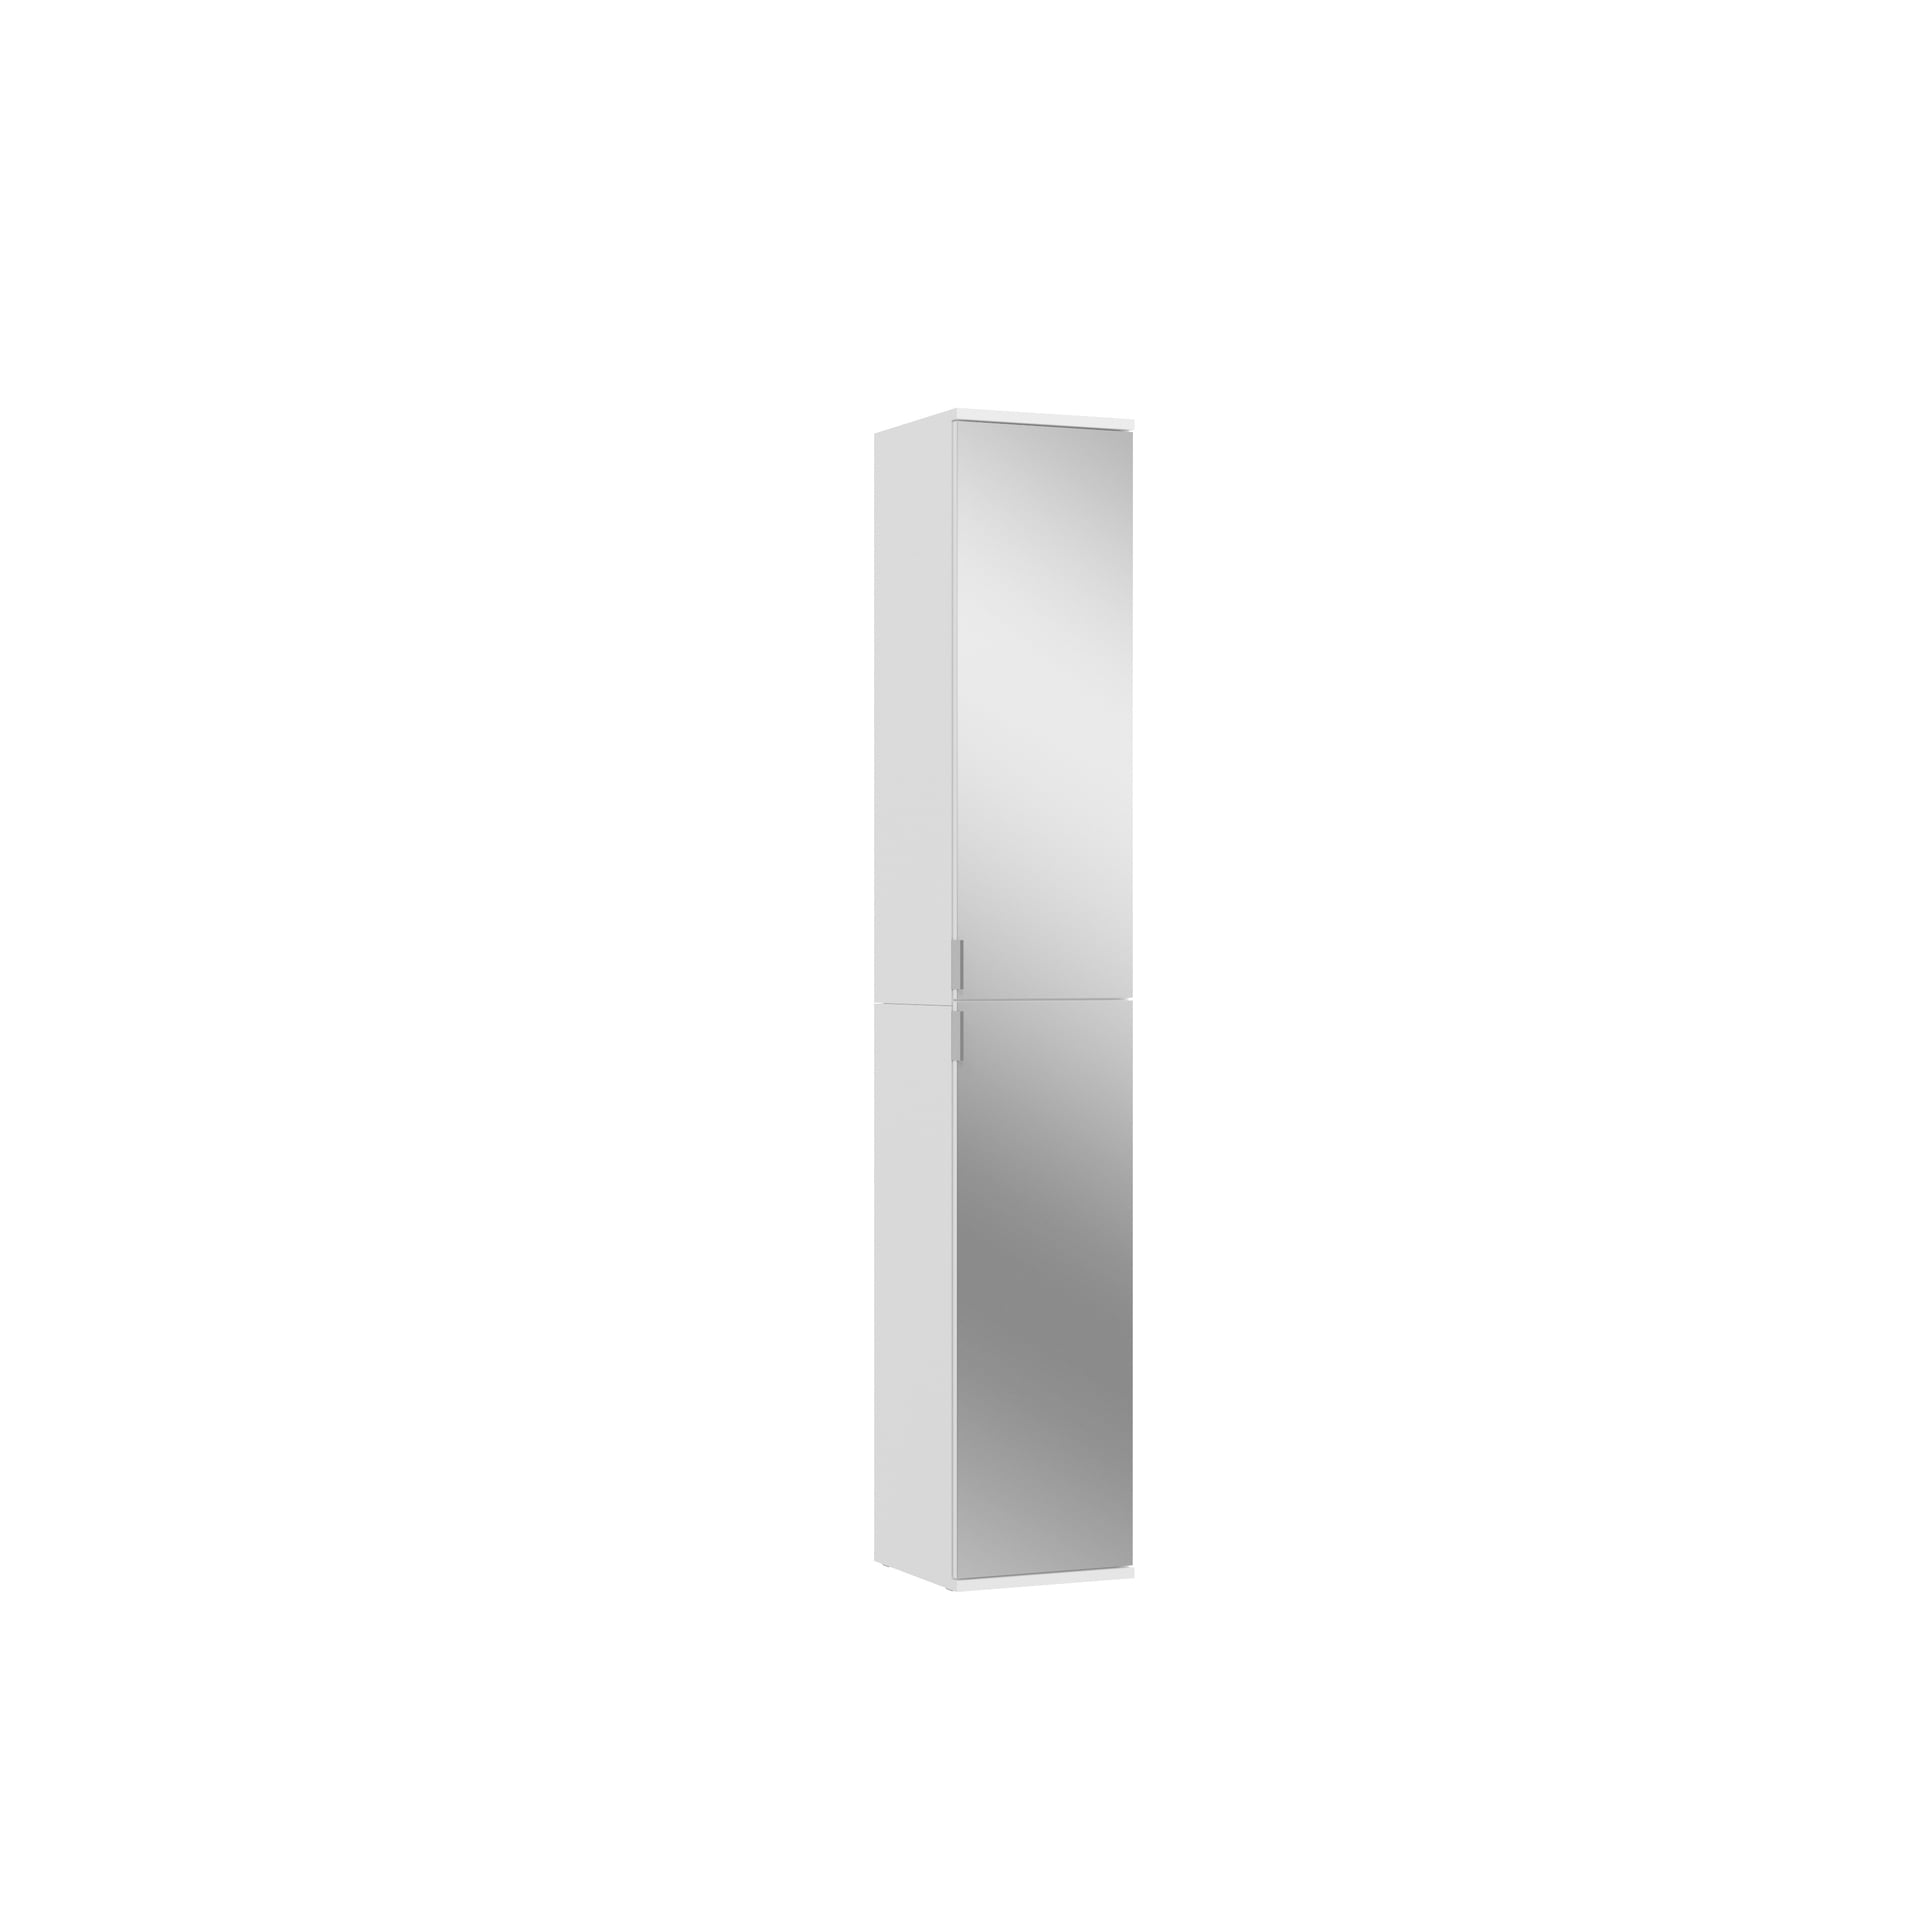 Garderobenkombination PROJEKT X 2-teilig 60 x 193 cm Spiegelfront/weiß Hochglanz